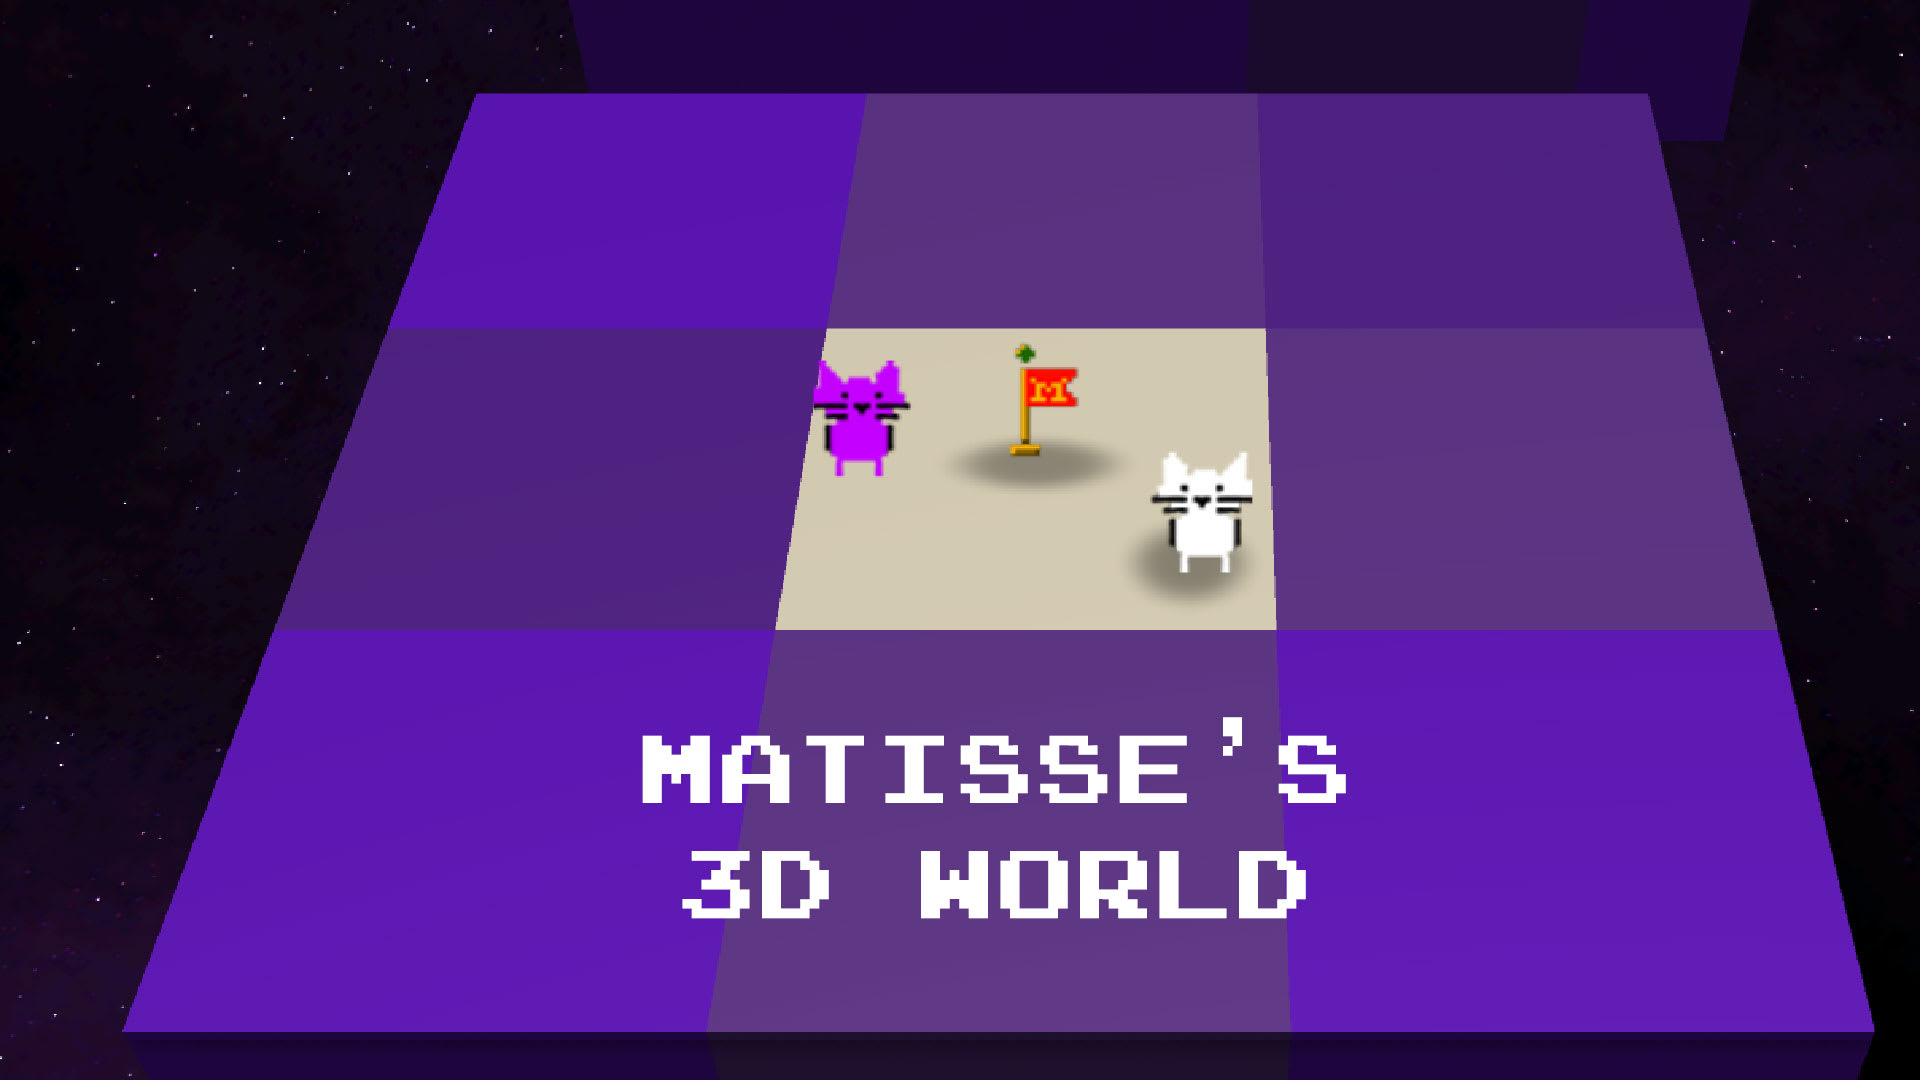 Matisse's 3D World